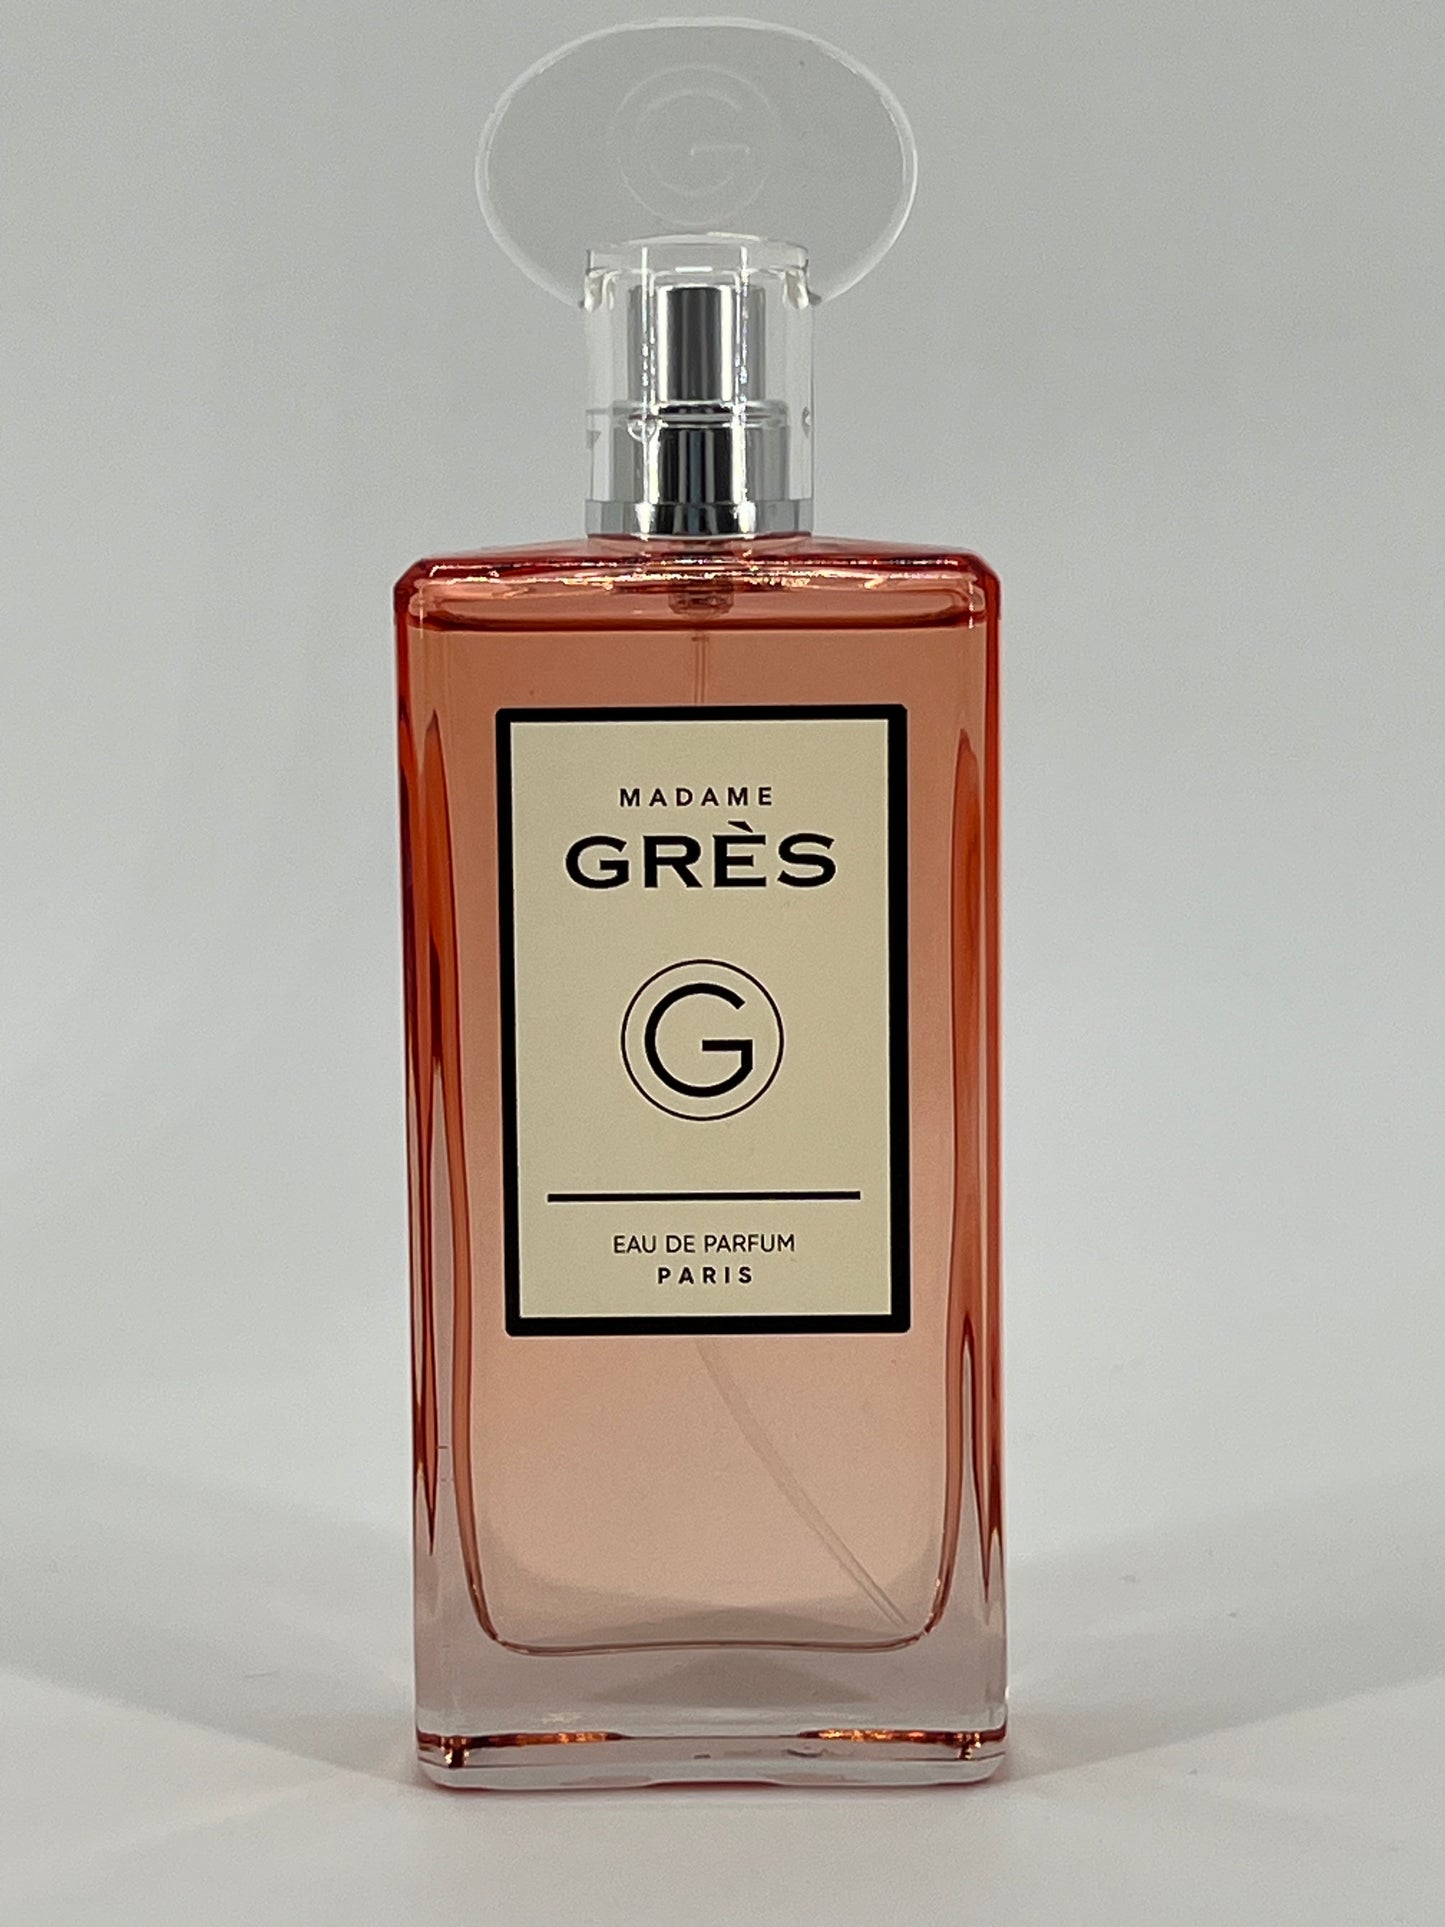 GRÈS - Madame grès - Eau de parfum